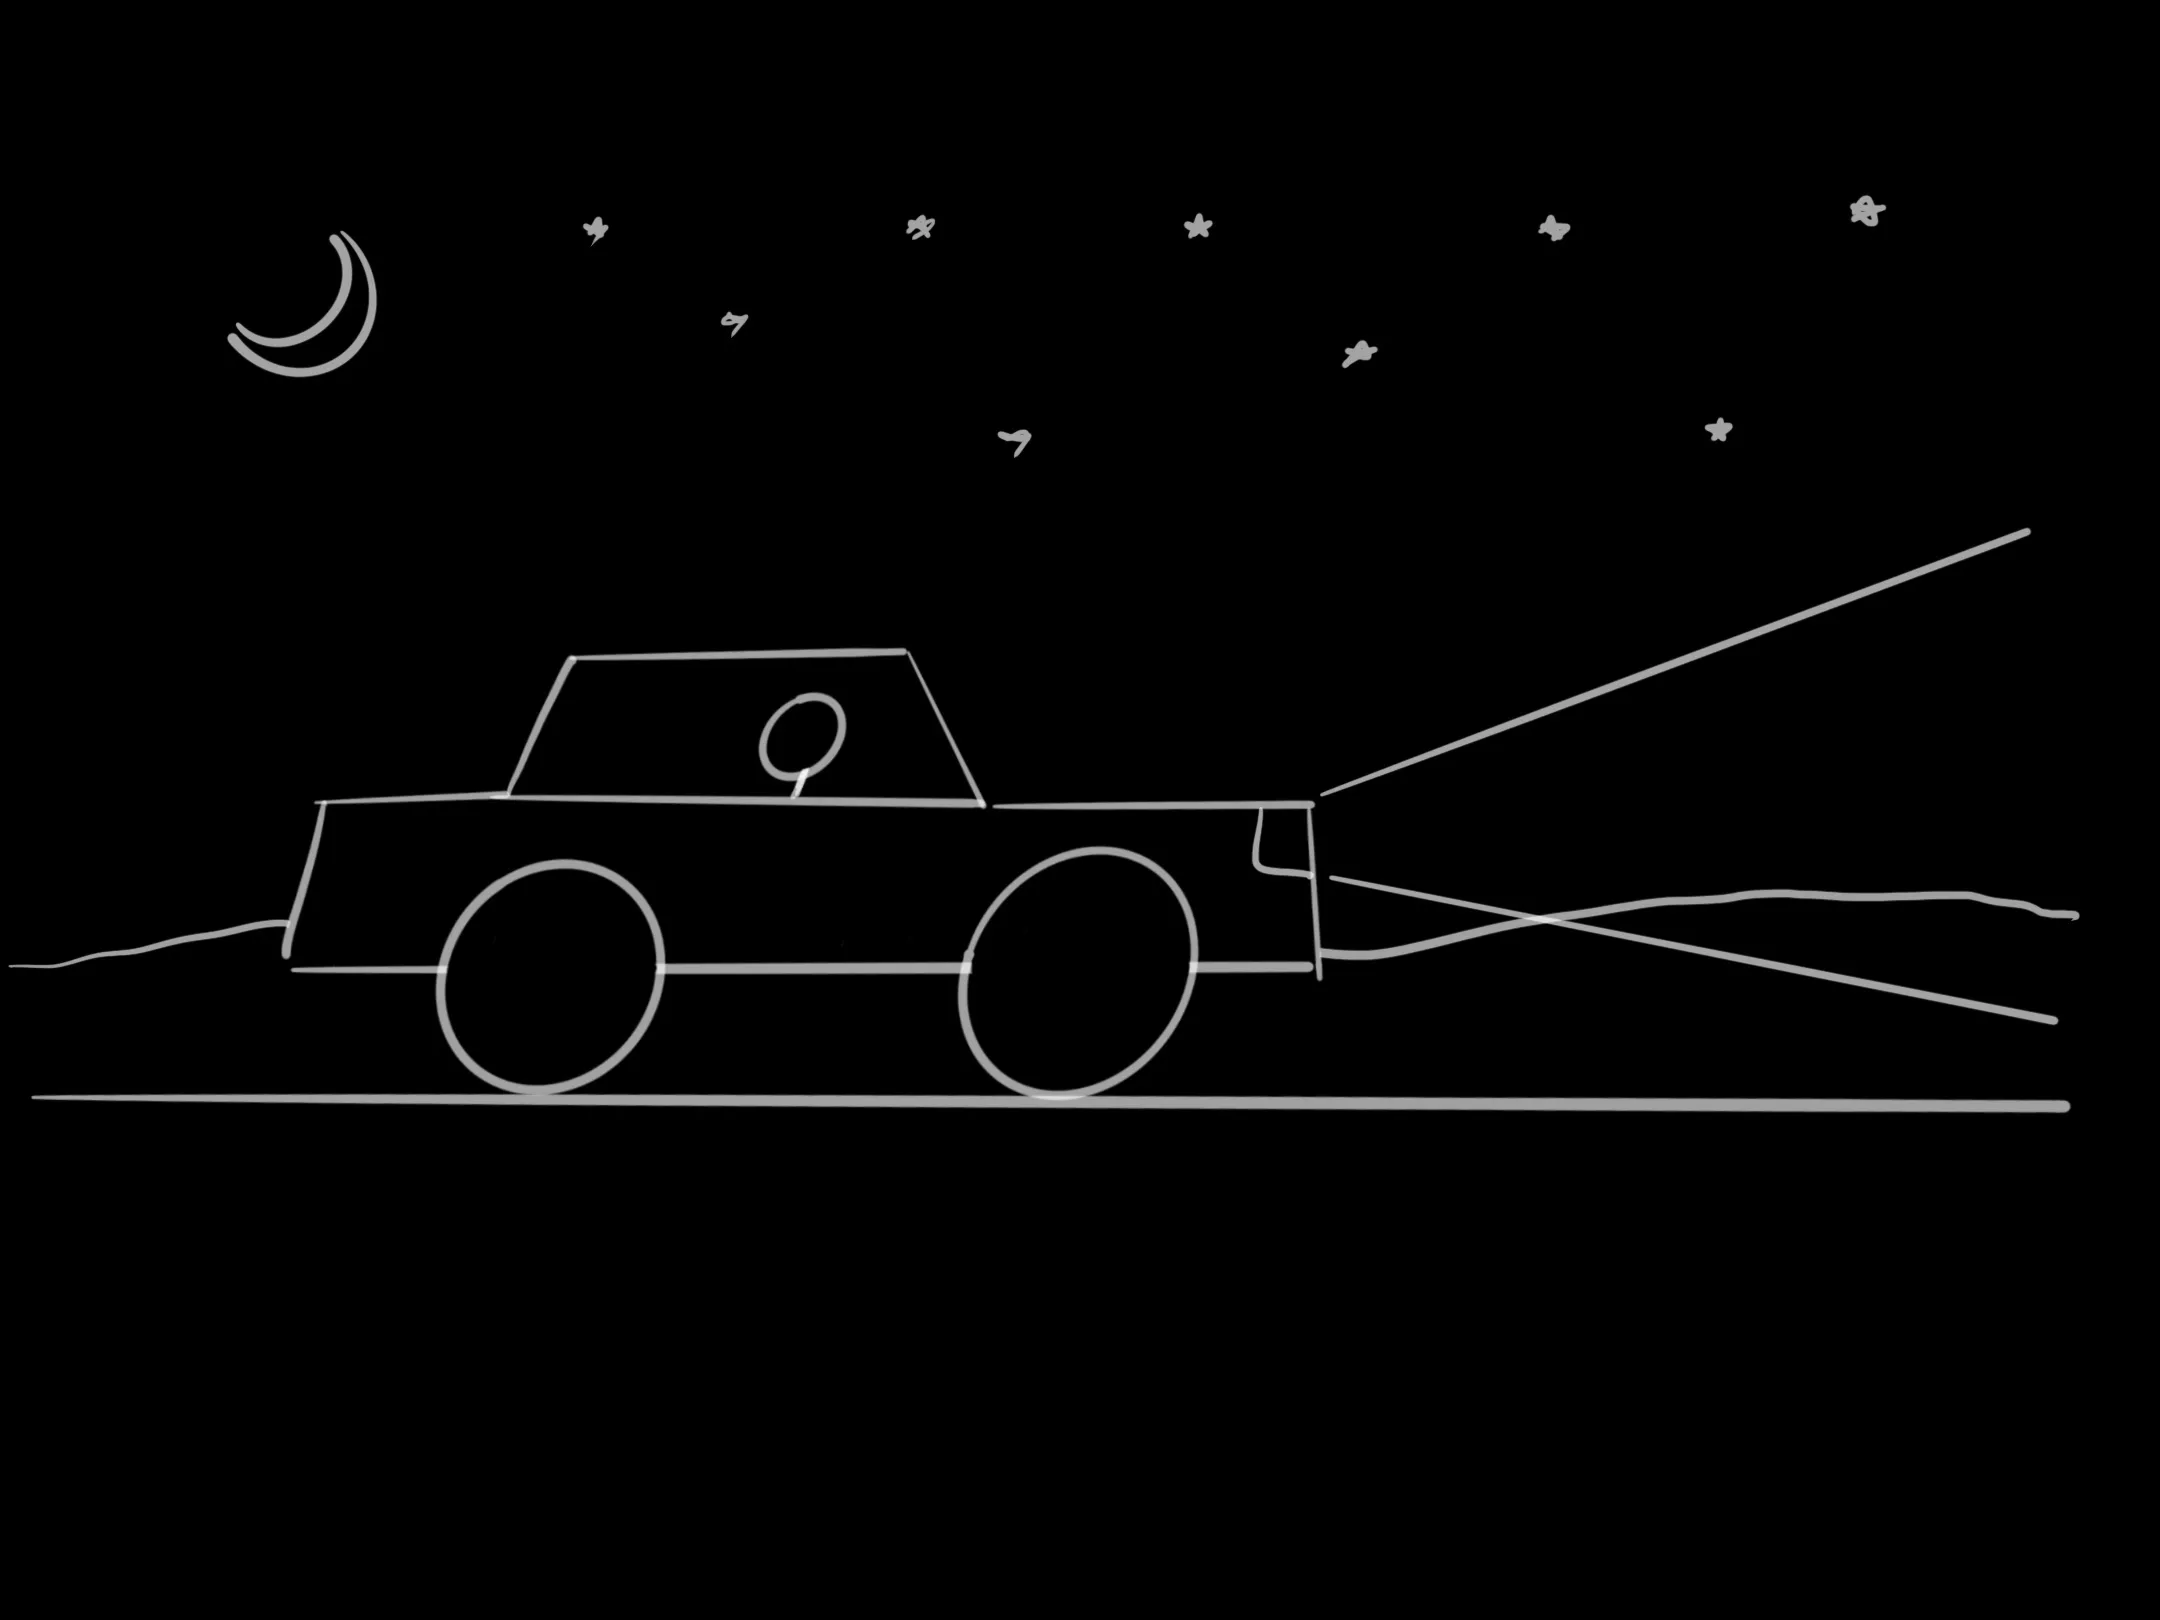 Cartoon of car driving at night